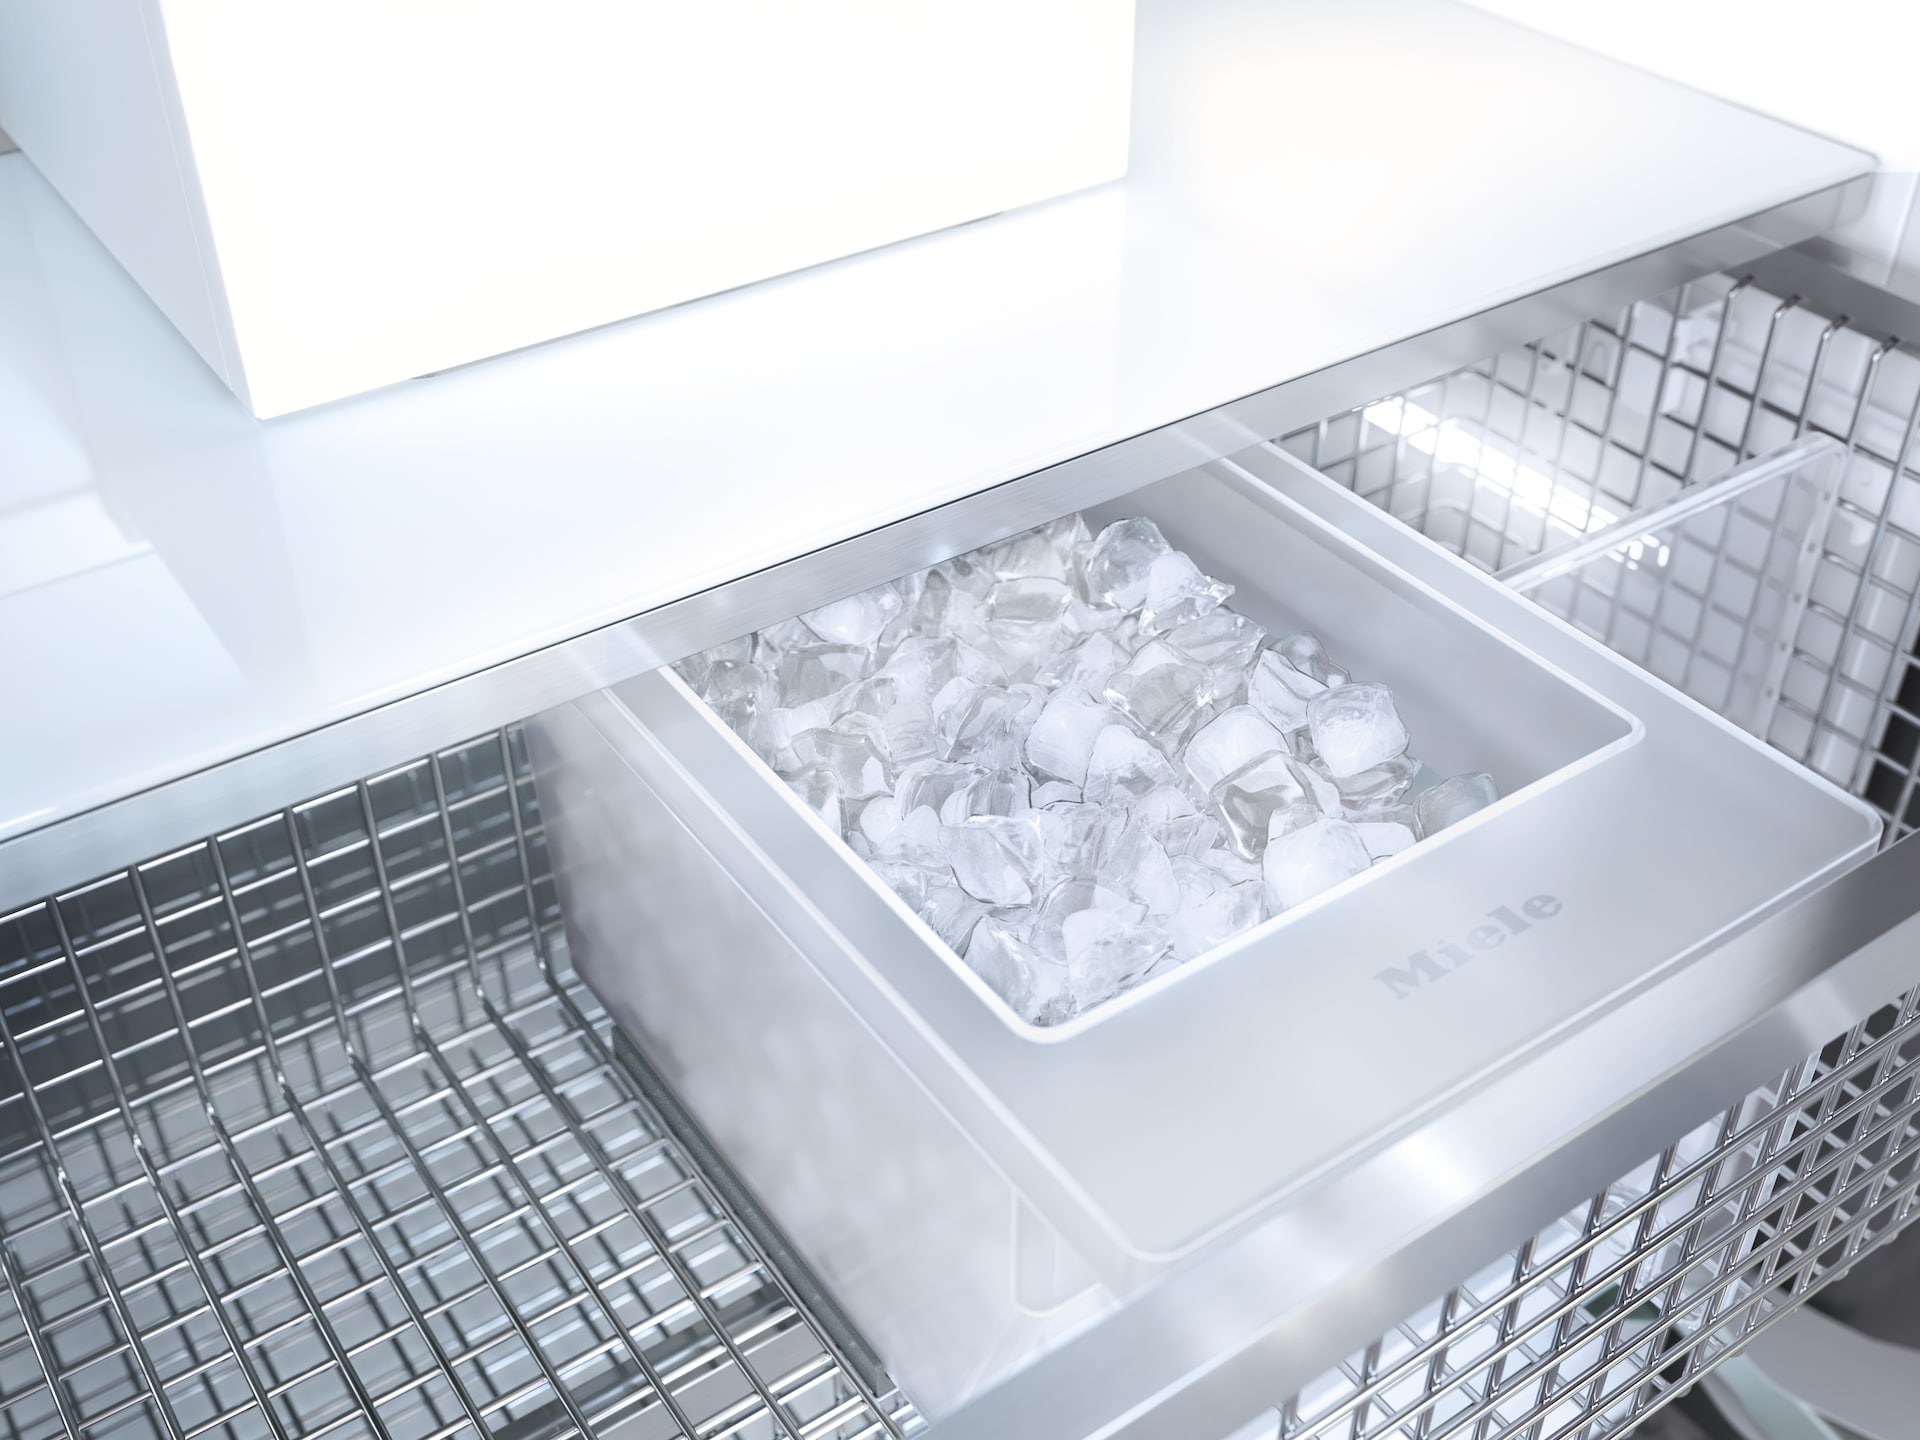 Refrigeration - F 2672 Vi - 10